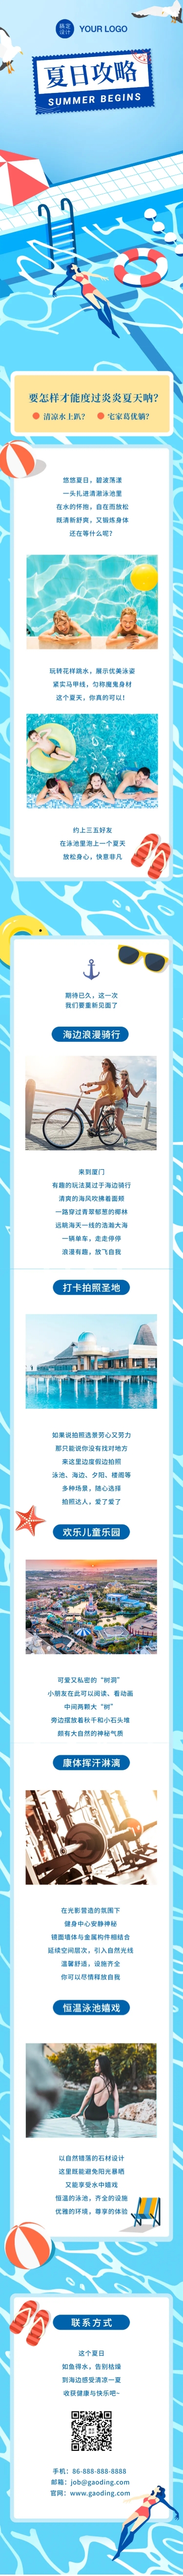 夏天营销酒店游泳池会员促销活动文章长图